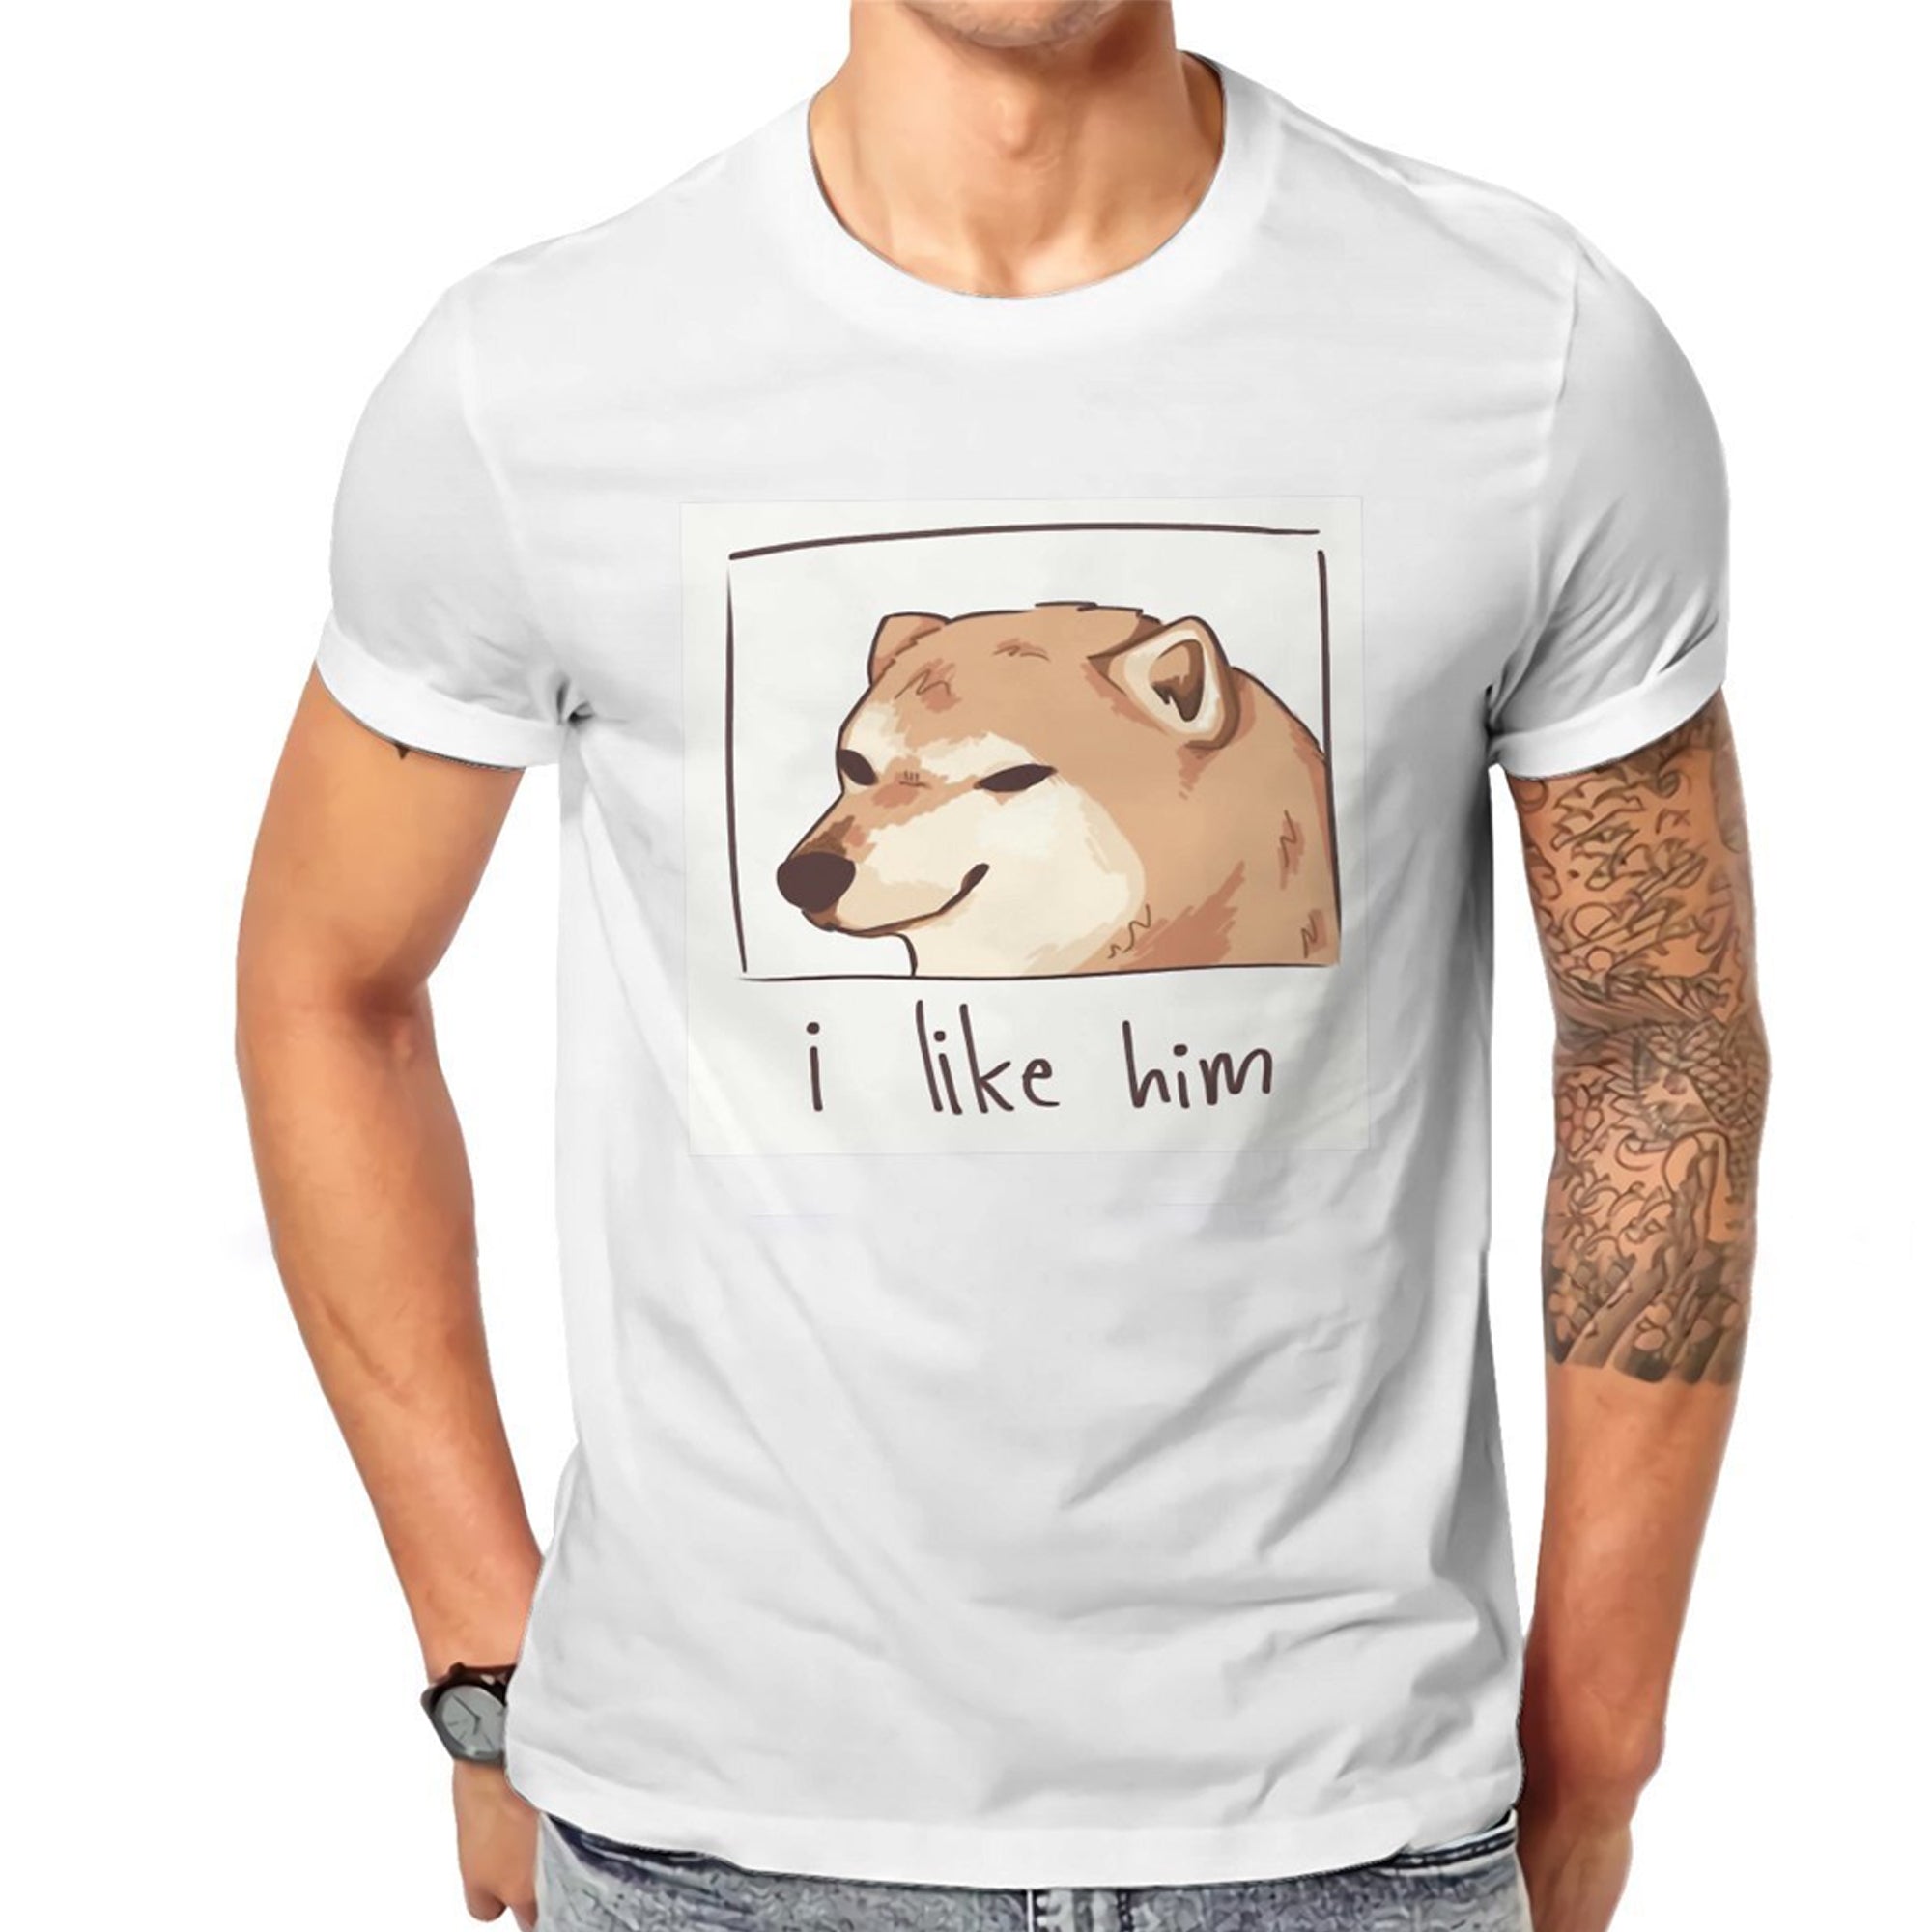 Meme Product - I like him T-shirt